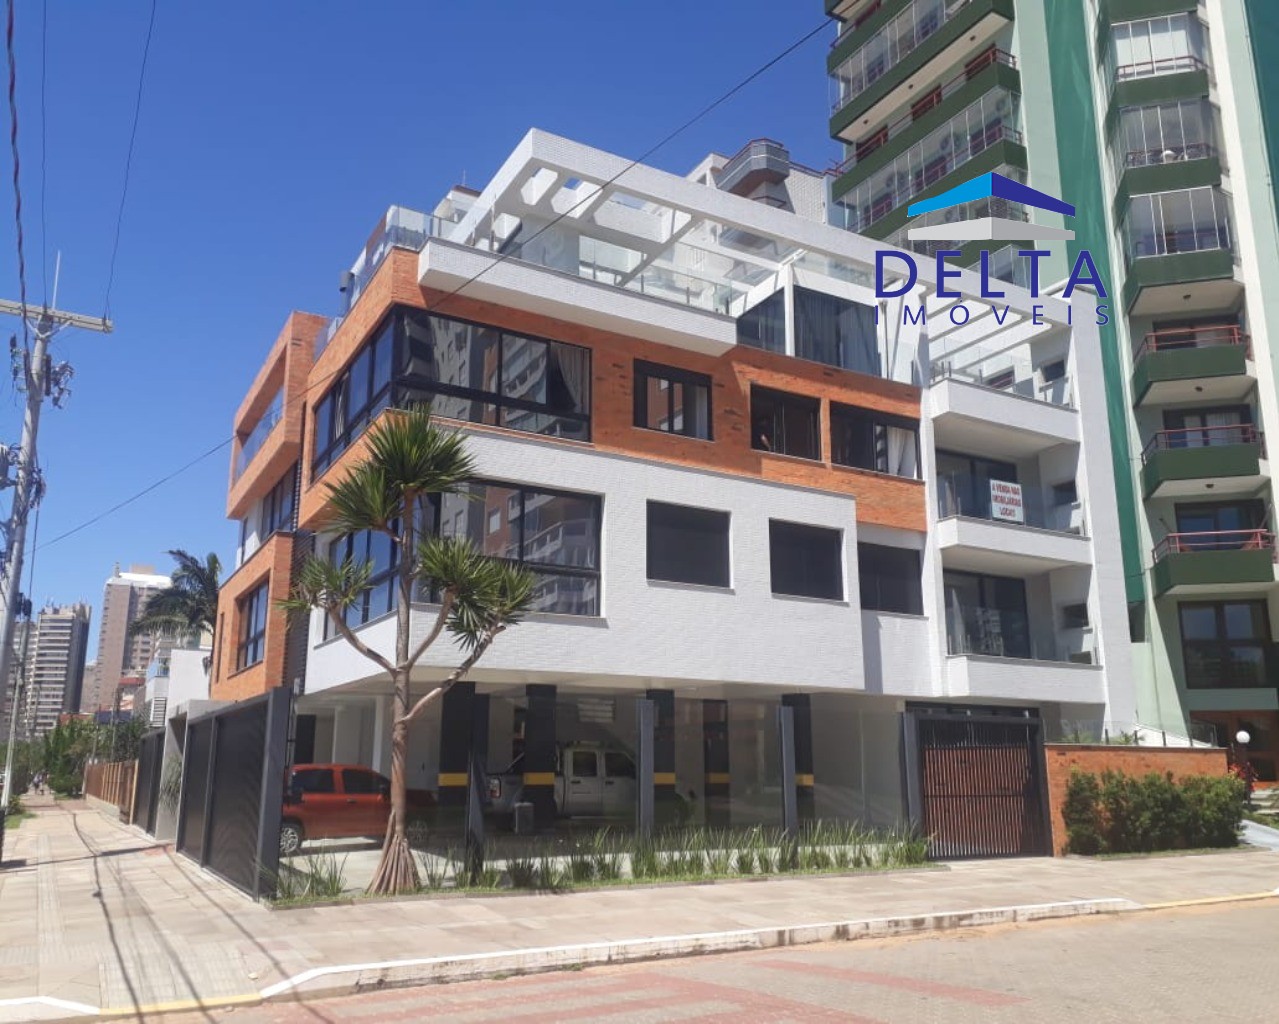 Projeto de residência moderna e funcional em Getúlio Vargas/RS